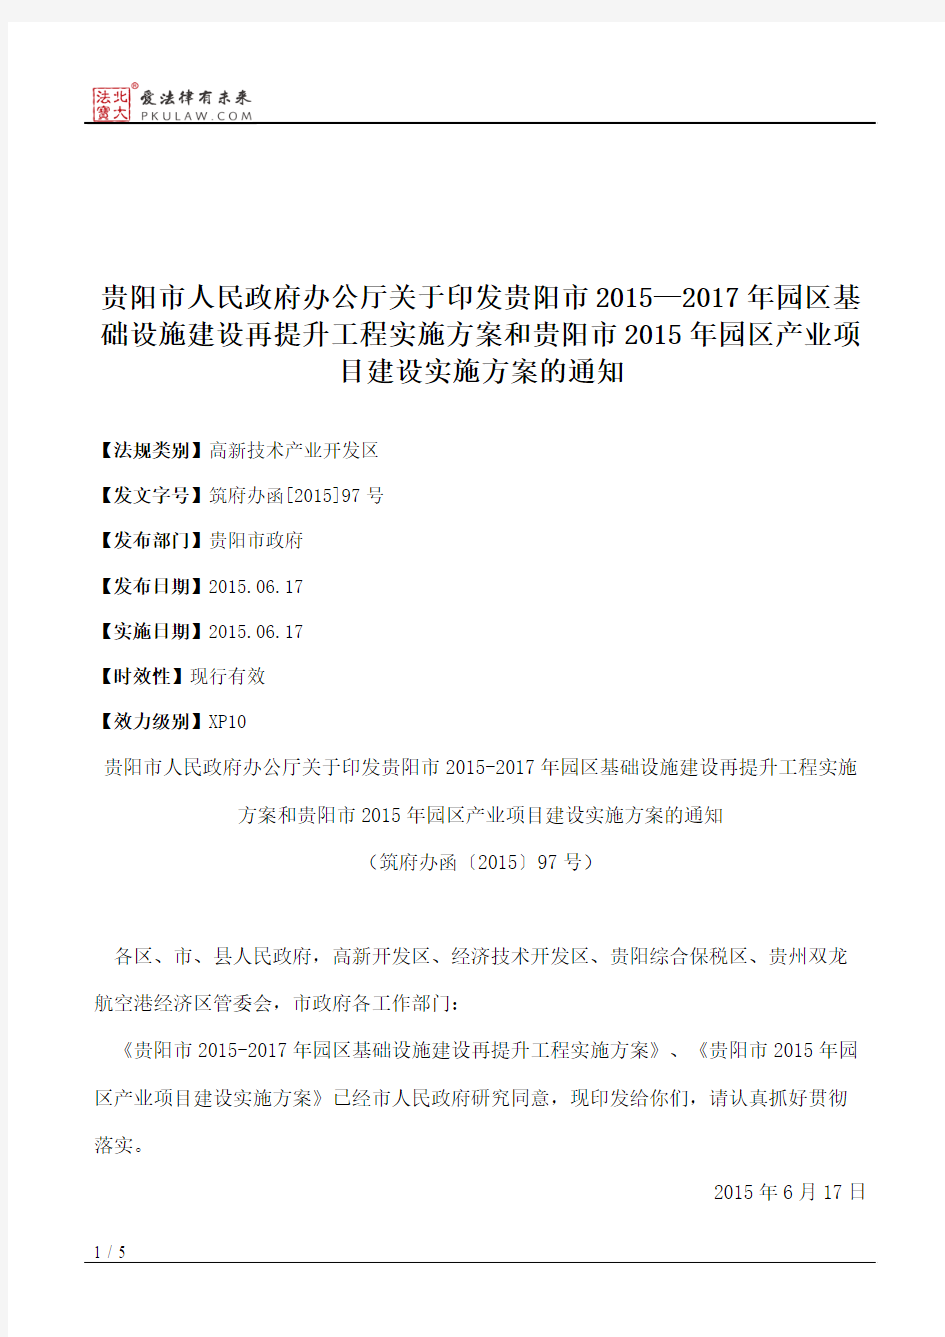 贵阳市人民政府办公厅关于印发贵阳市2015—2017年园区基础设施建设